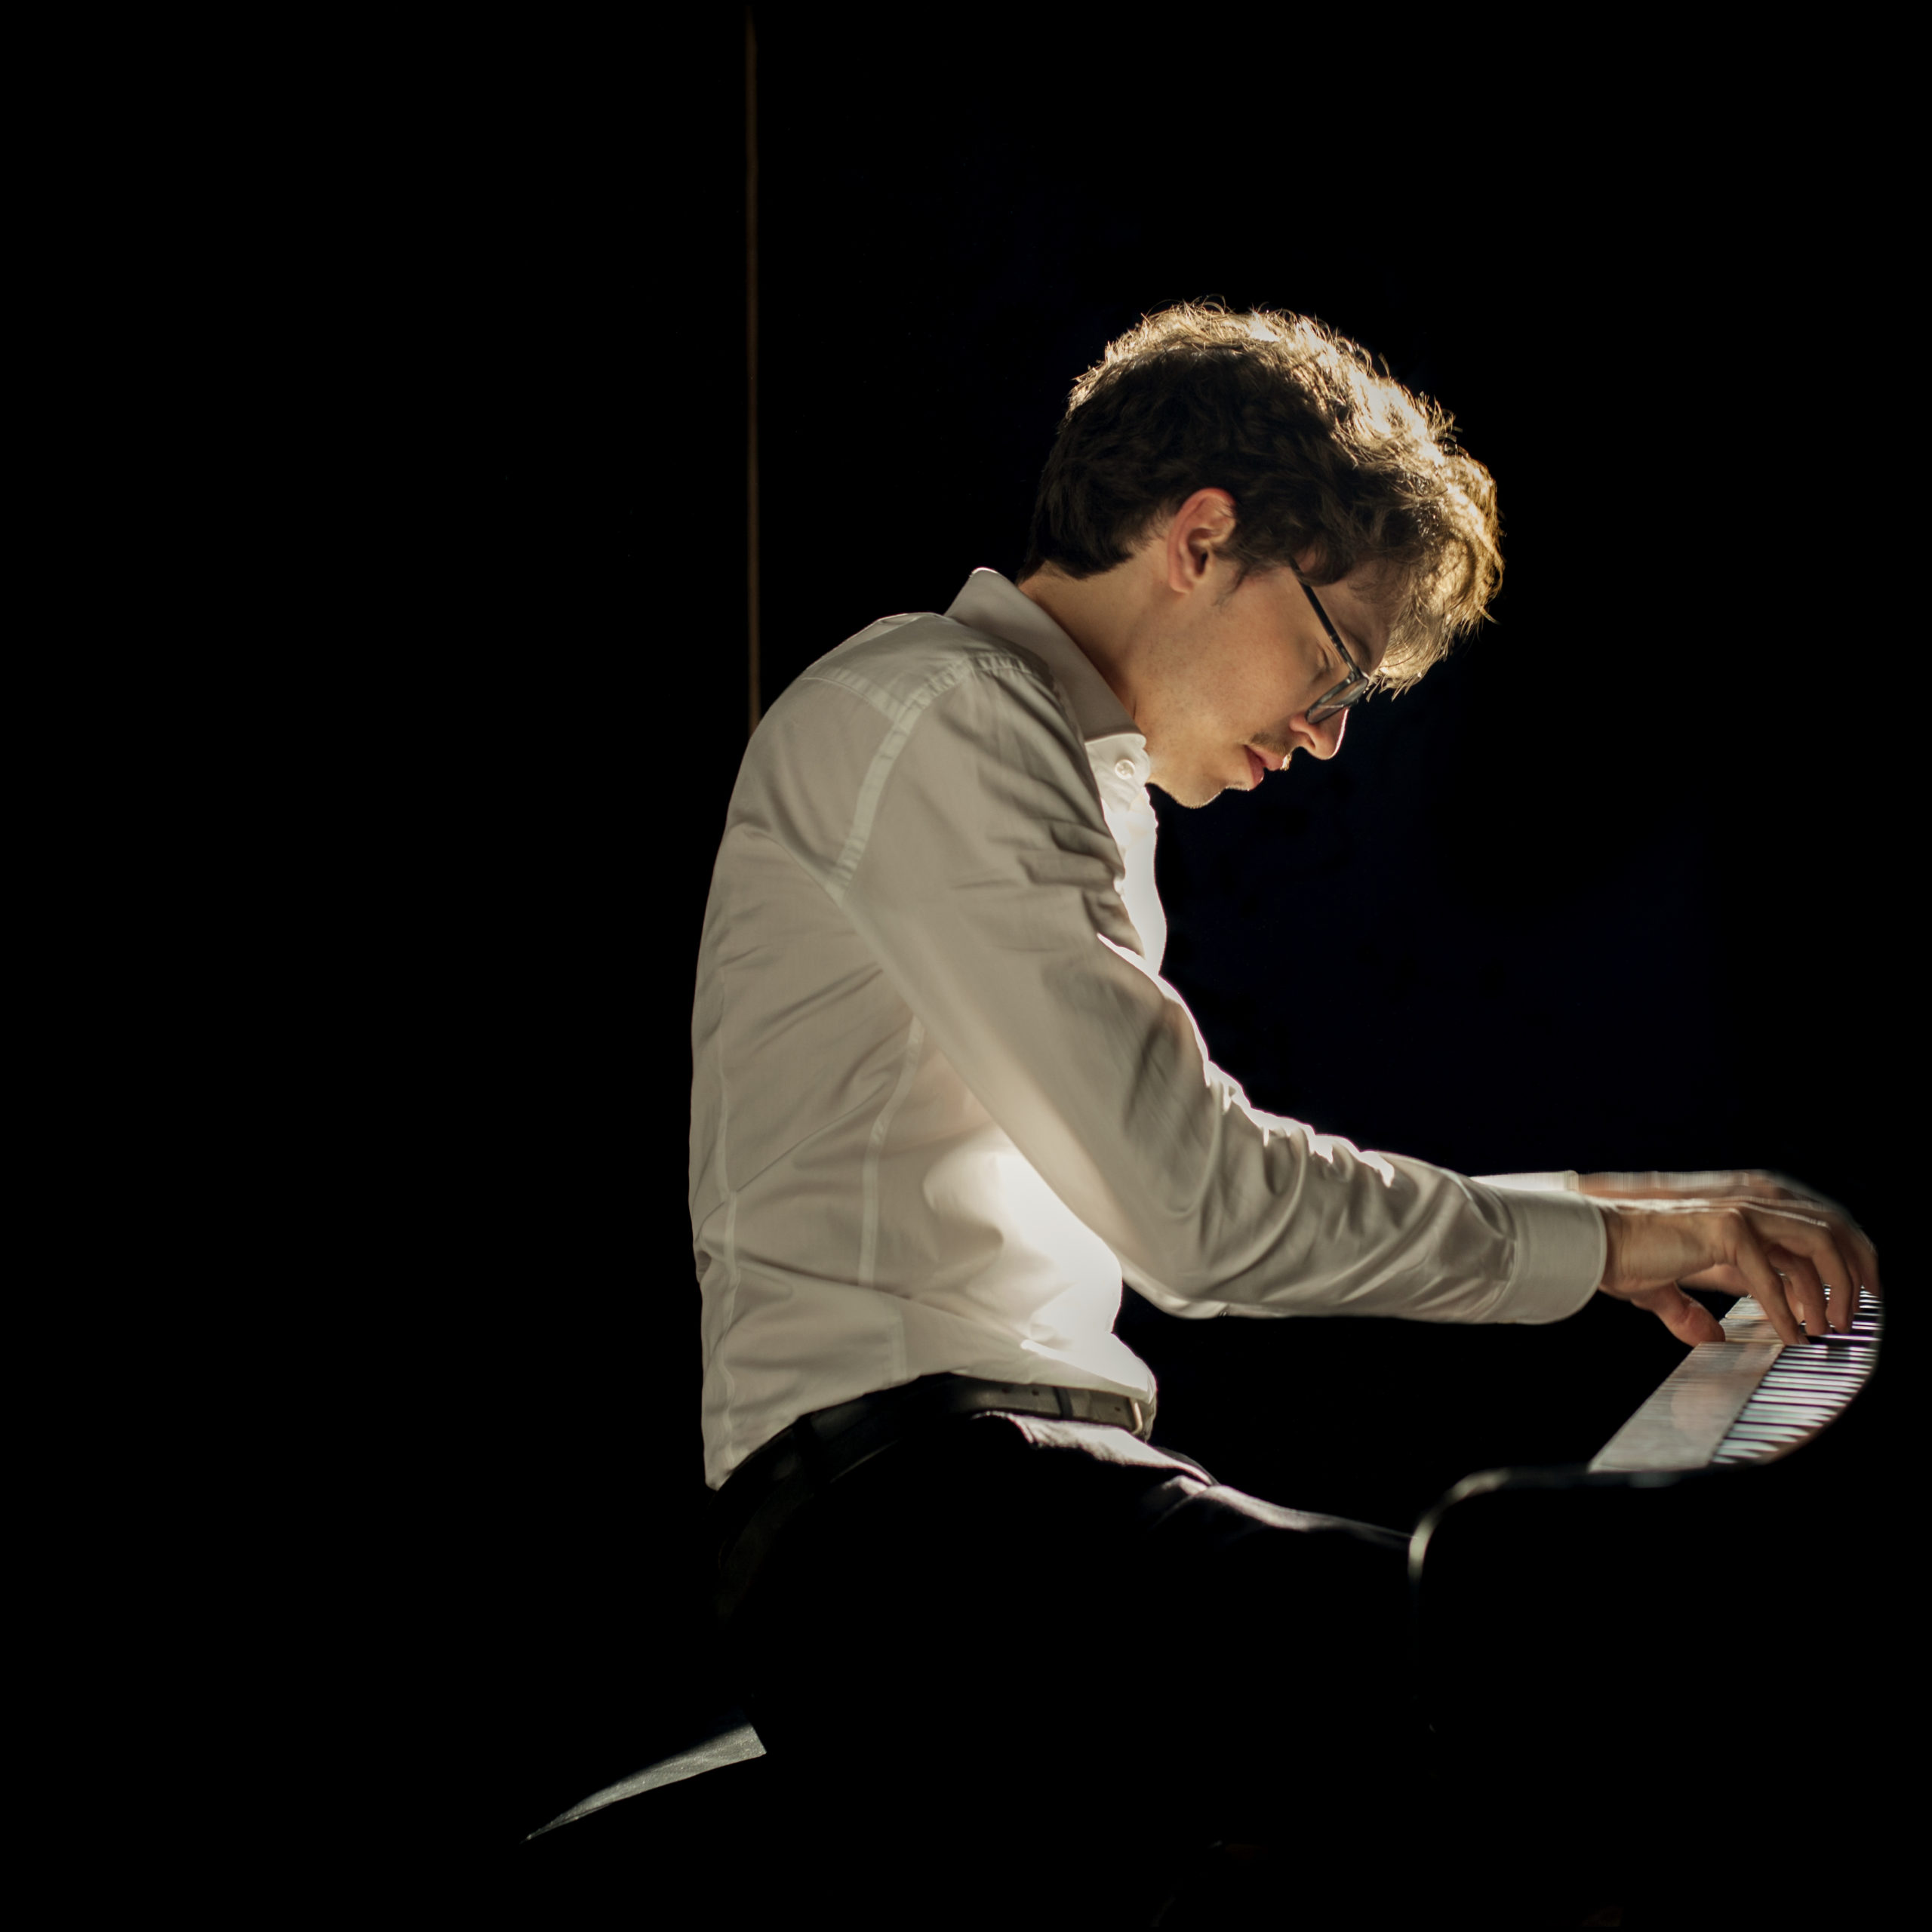 Debargue pianist piano French Scarlatti artist musician performer